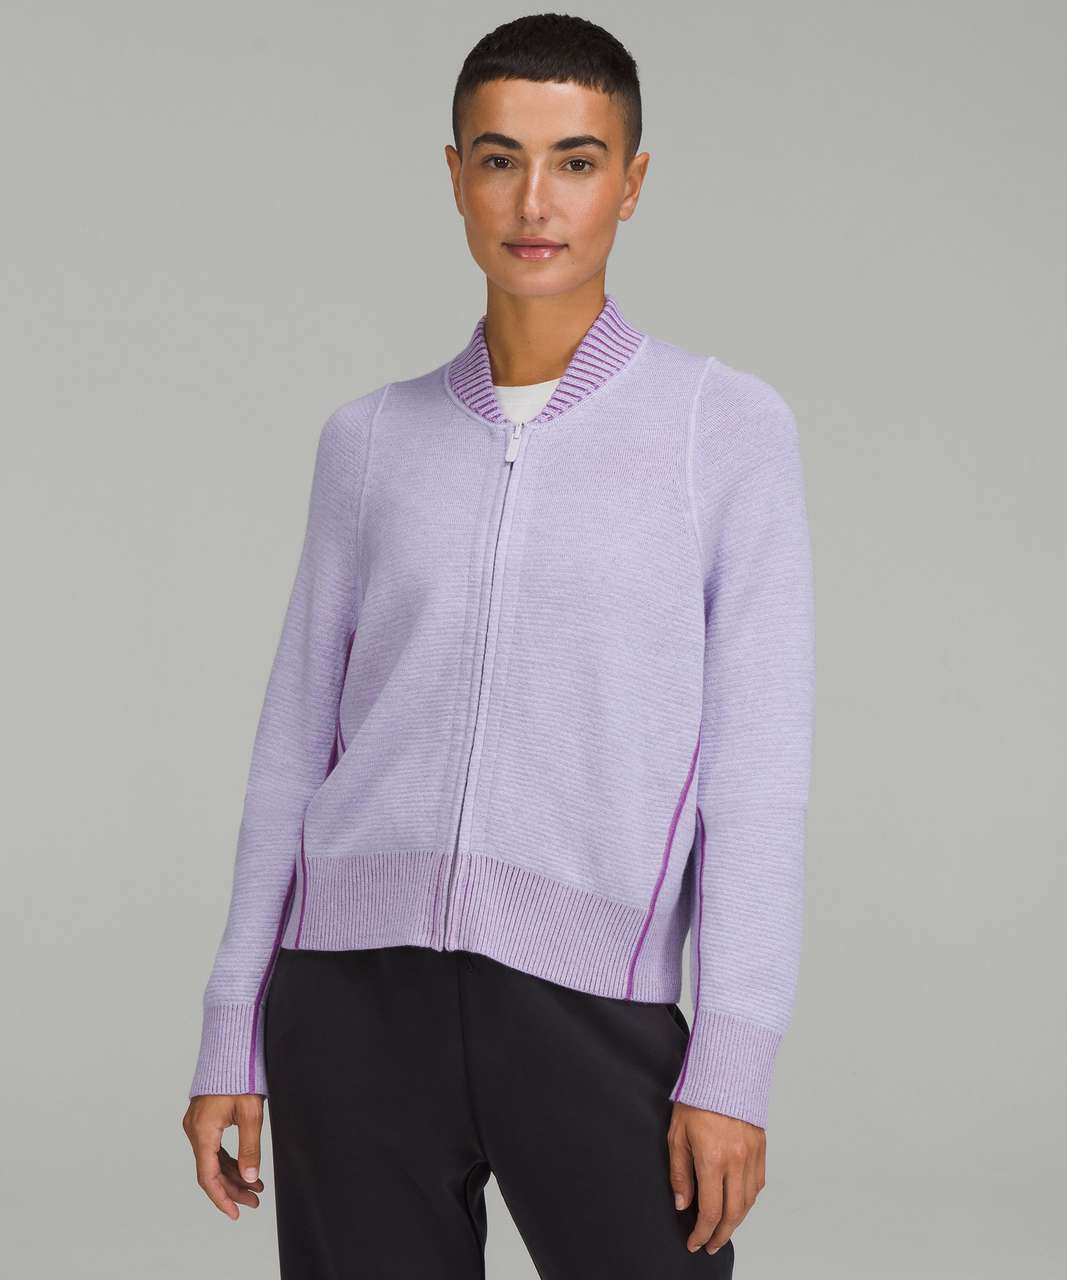 Lululemon Reversible Double-Knit Zip-Up Sweater - Faint Lavender / Moonlit Magenta